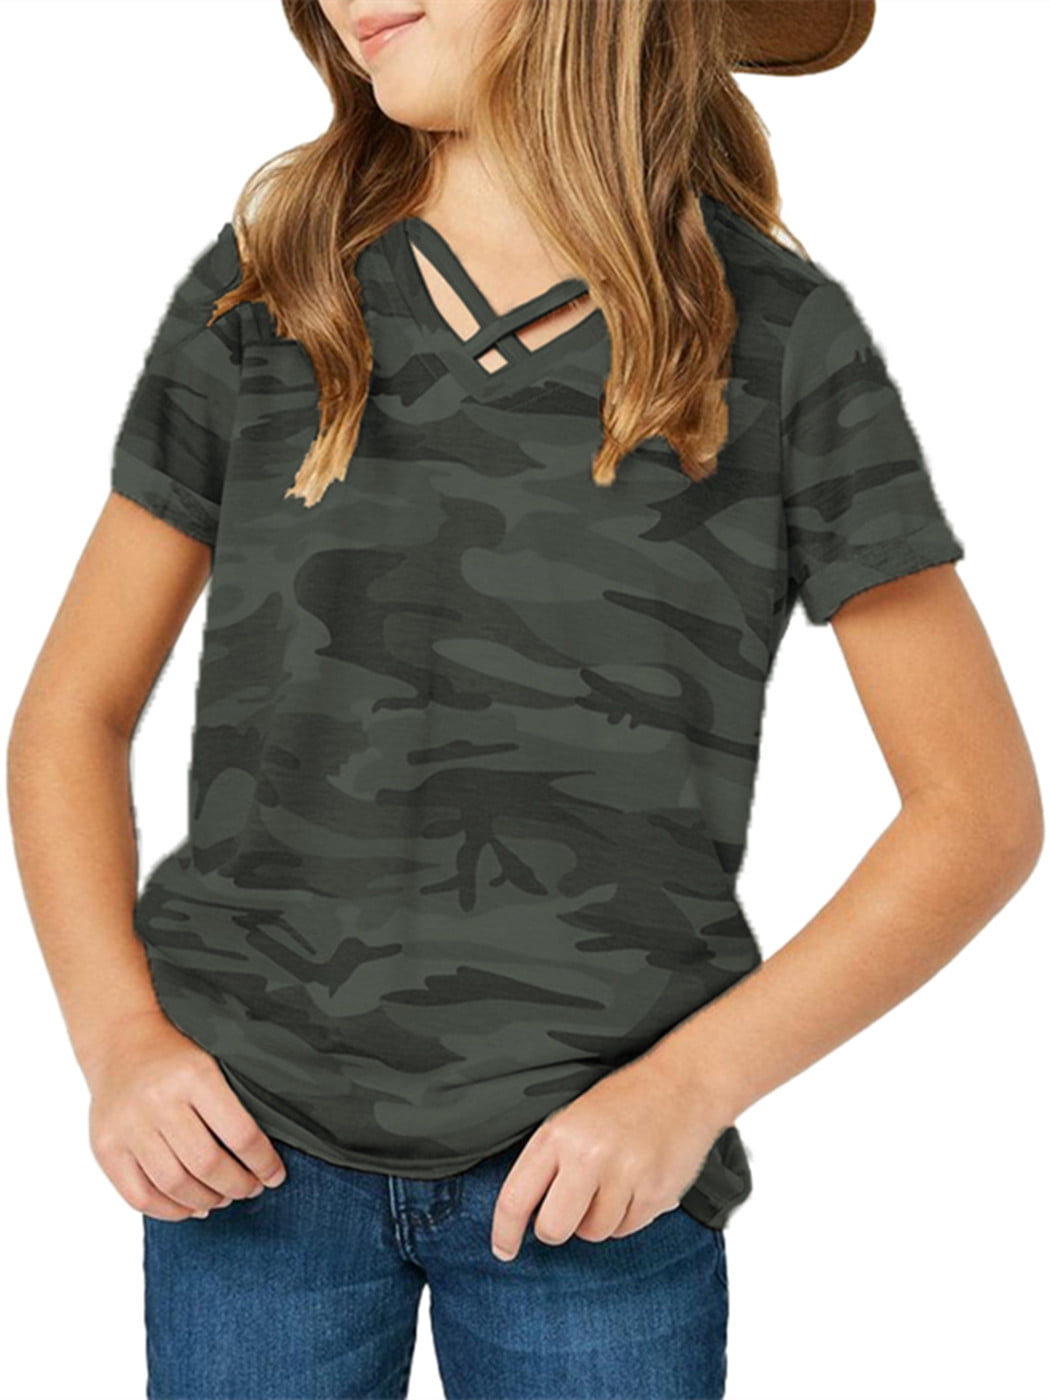 Camouflage Sleeved Print Short Tops Children Langwyqu Kids Girls T-Shirt Cross